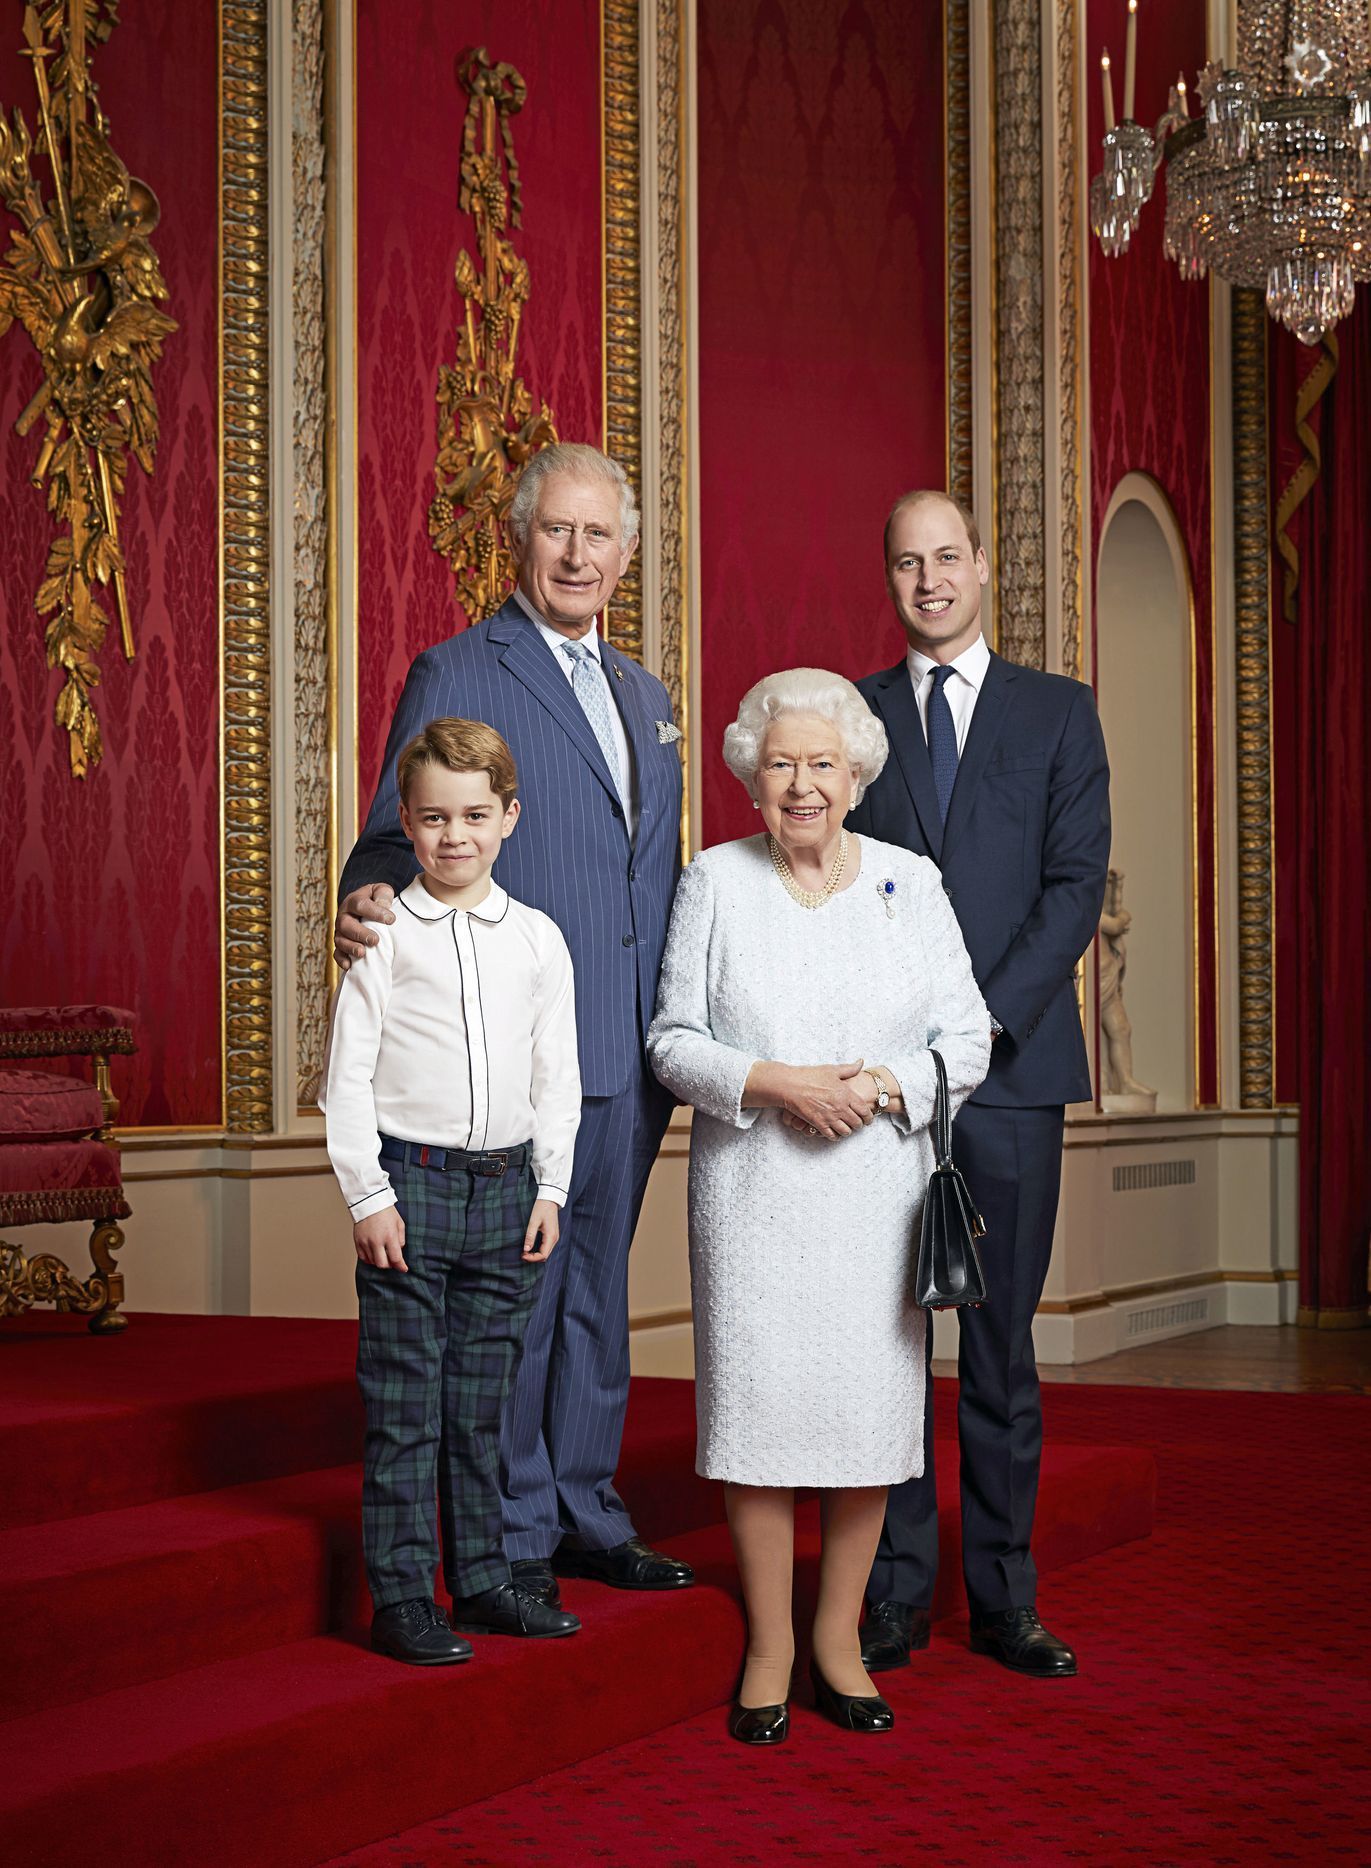 Nový portrét královny Alžběty II. a tří následníků trůnu